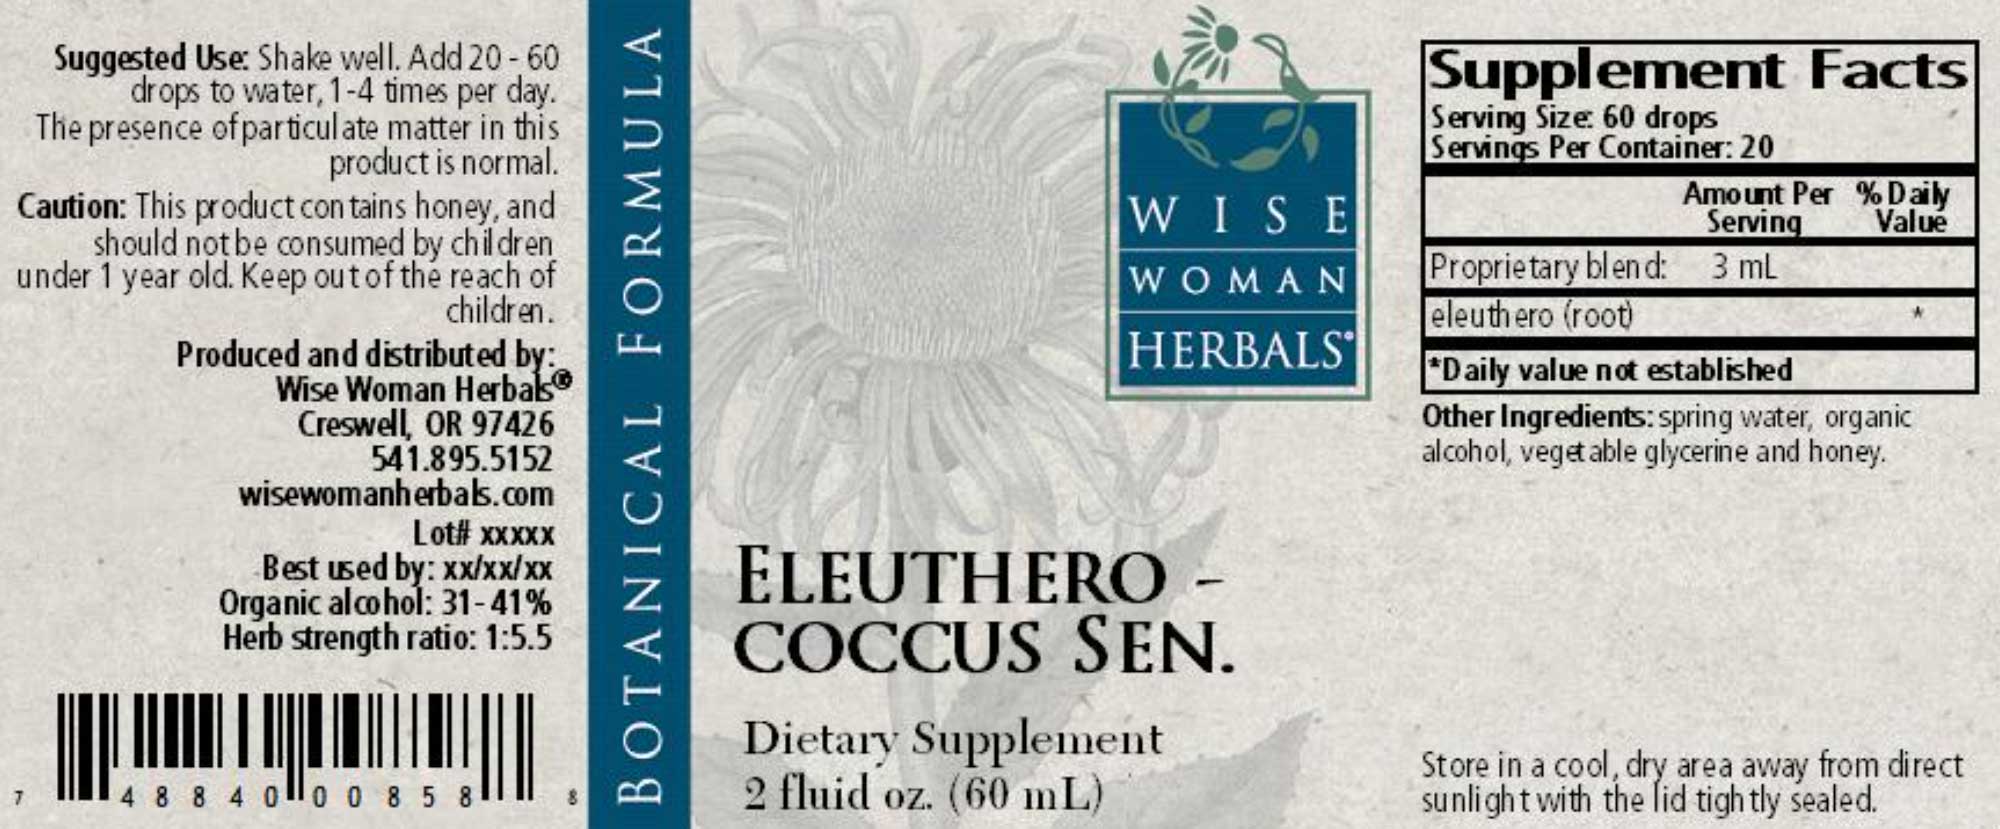 Wise Woman Herbals Eleutherococcus Senticosus Eleuthero Label